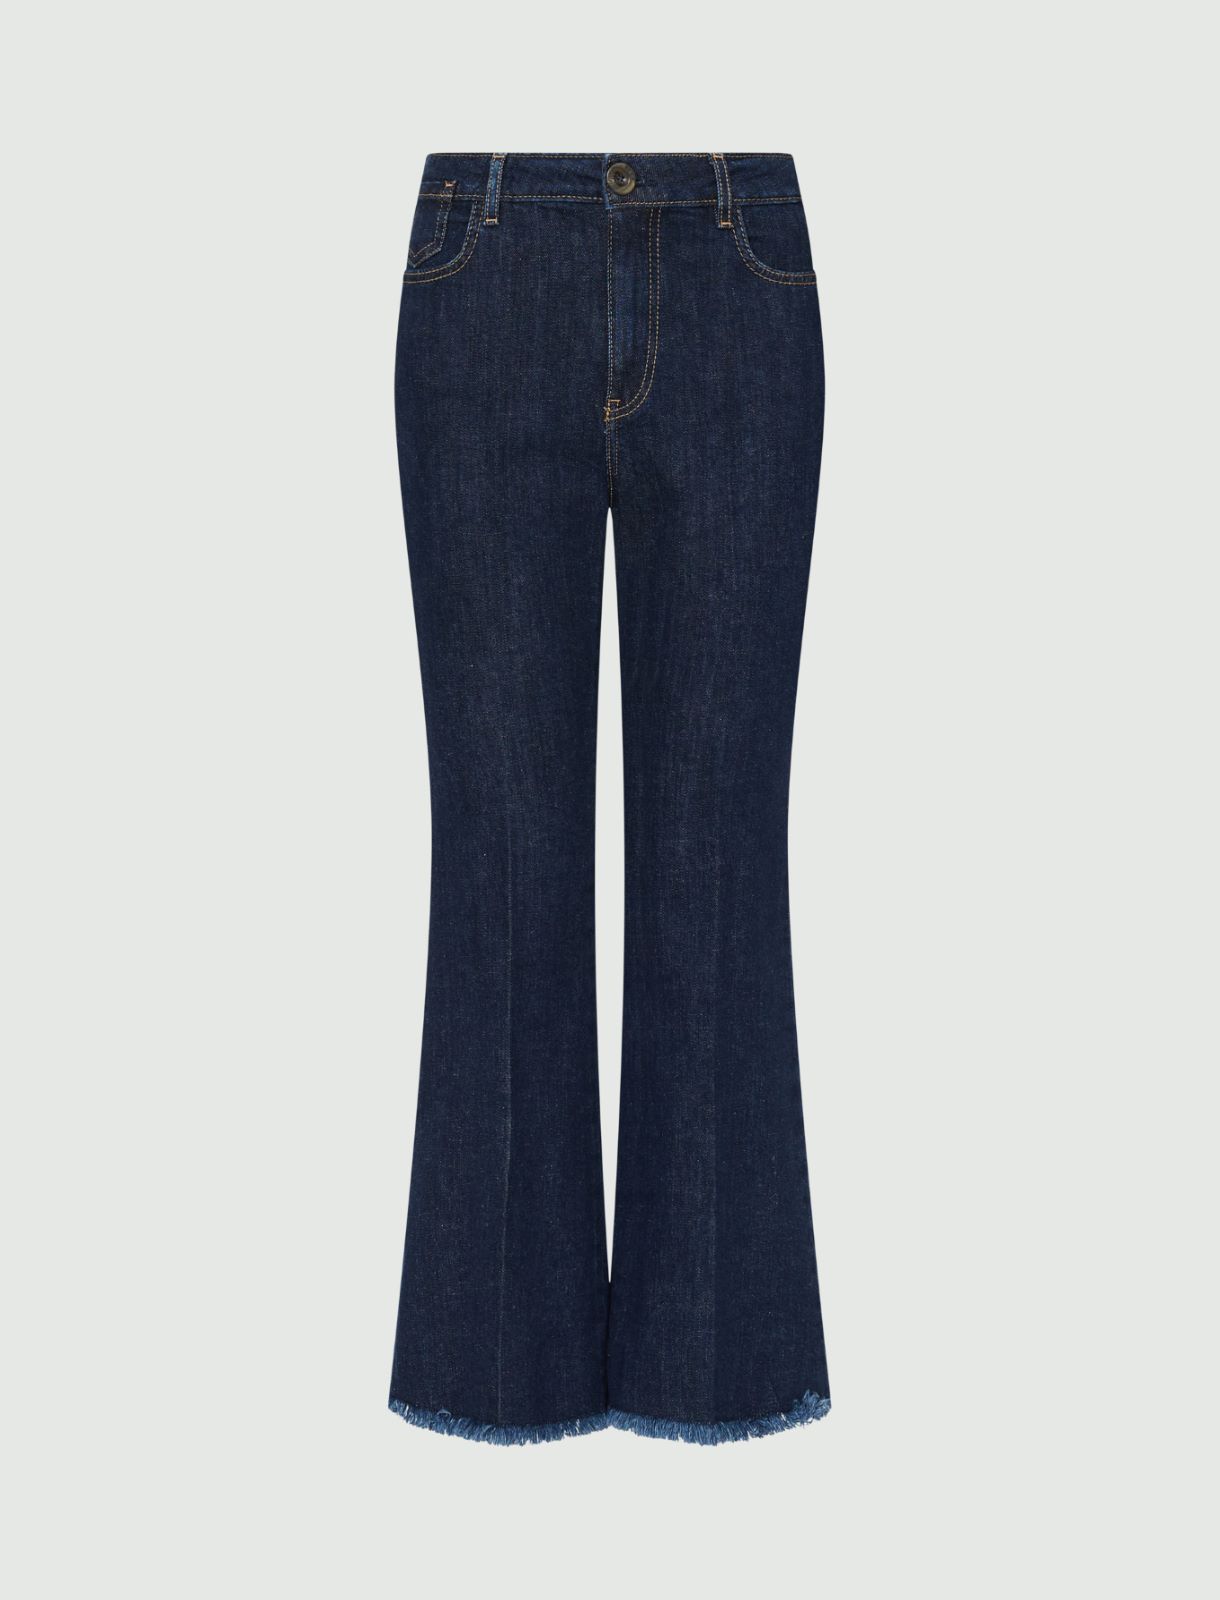 Jean patte d’éph - Bleu jeans - Marella - 5